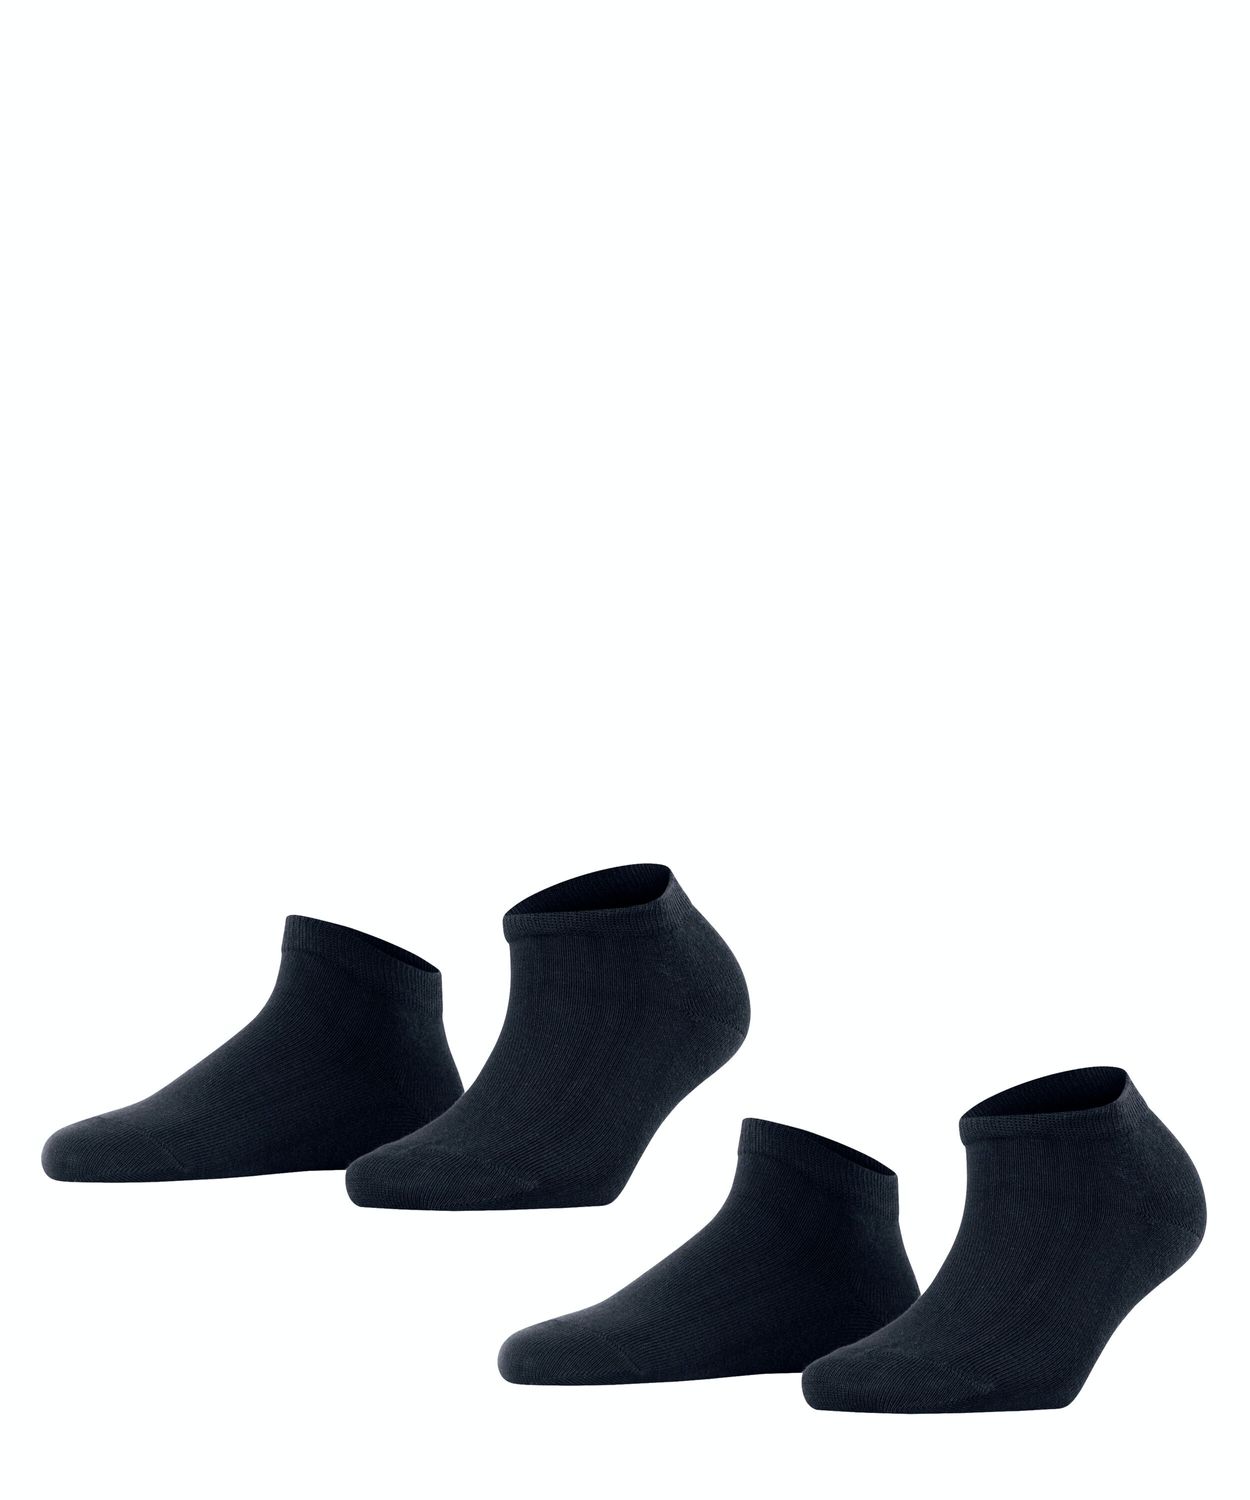 Falke Damen Sneaker Socken HAPPY- 2er Pack Hersteller: Falke Bestellnummer:4031309093451